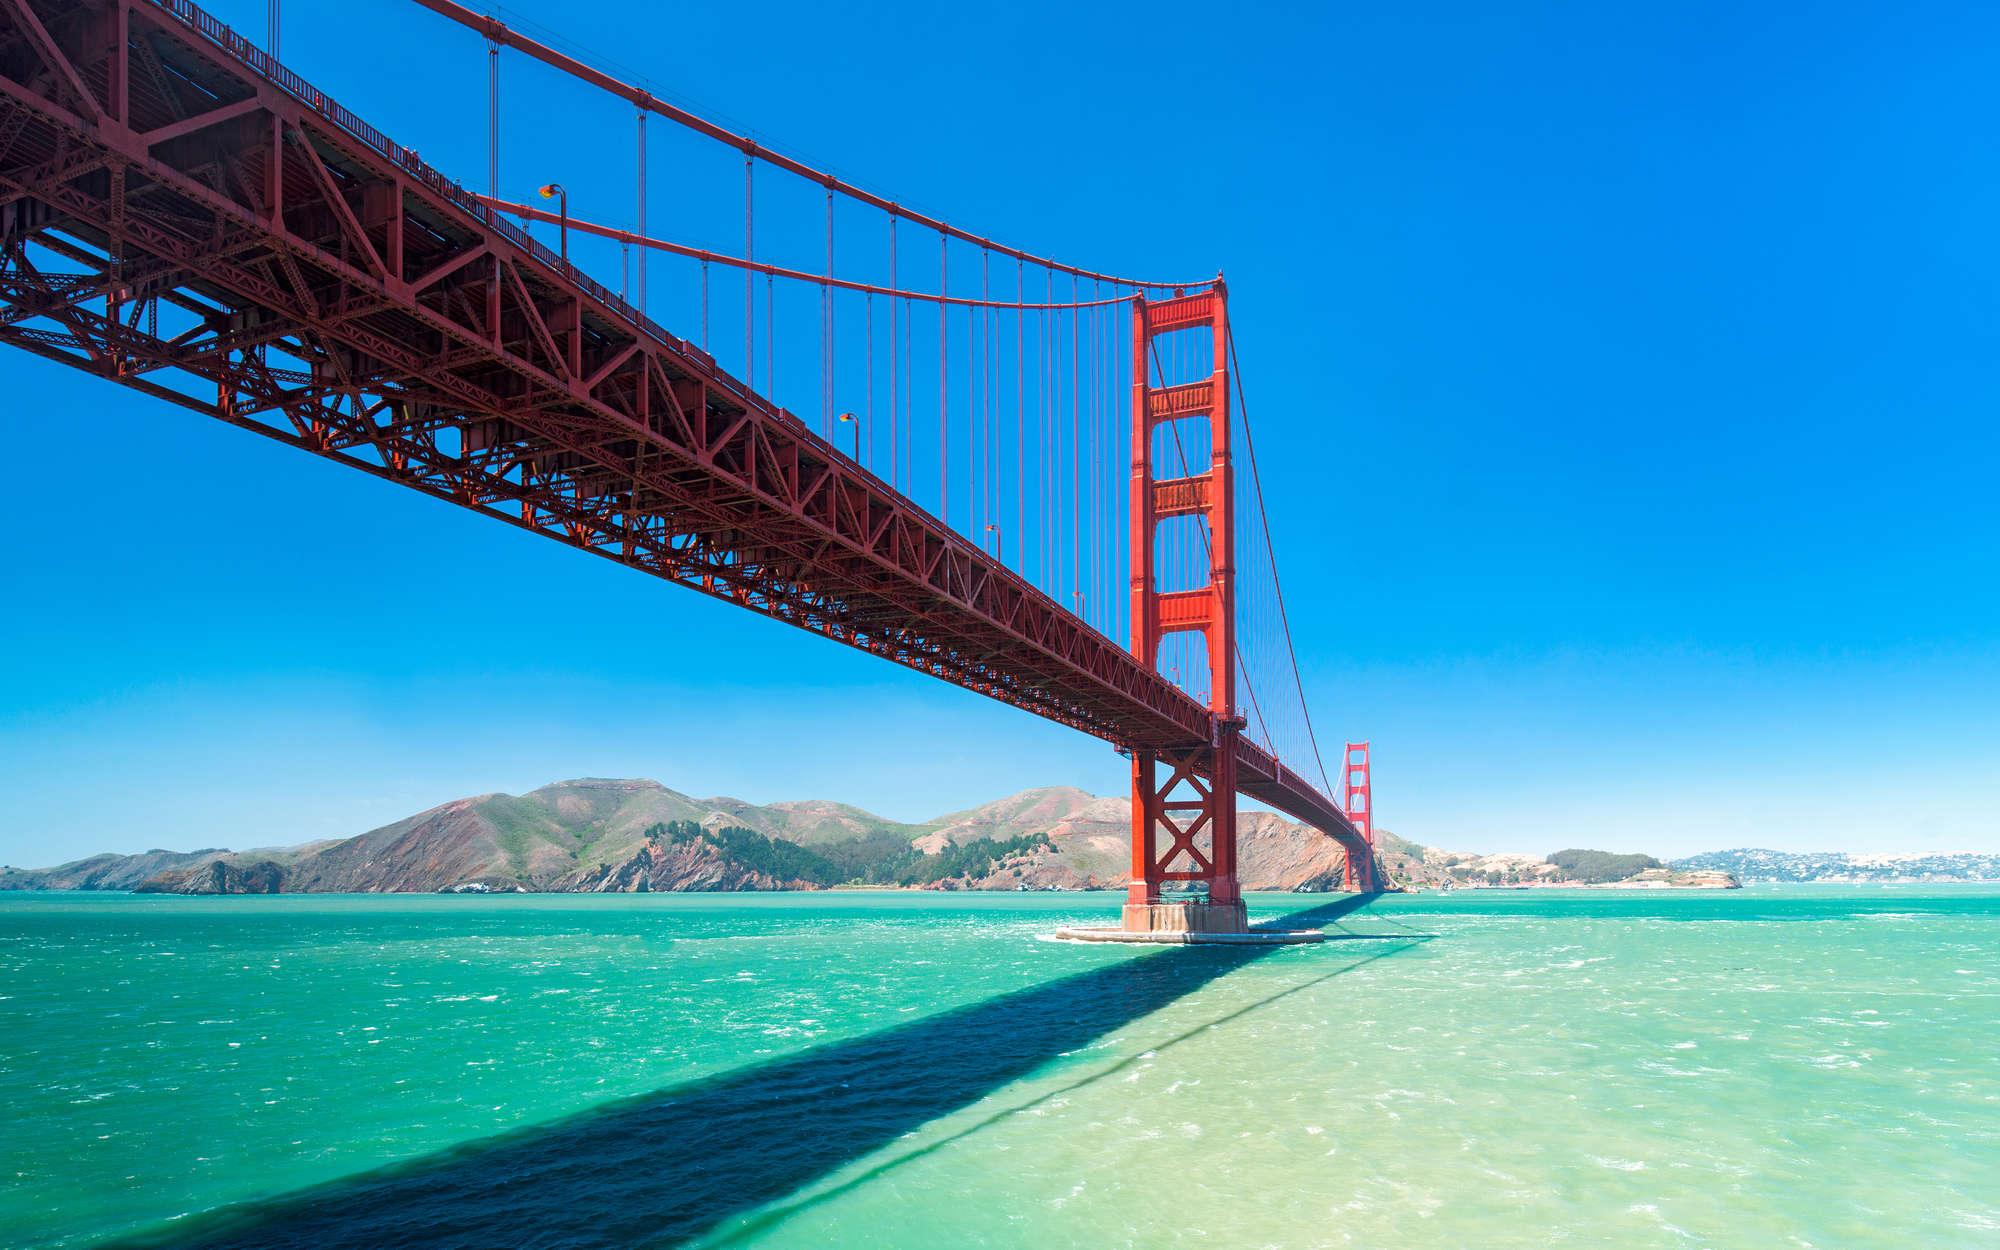             Golden Gate Bridge in San Francisco Wallpaper - Textured non-woven
        